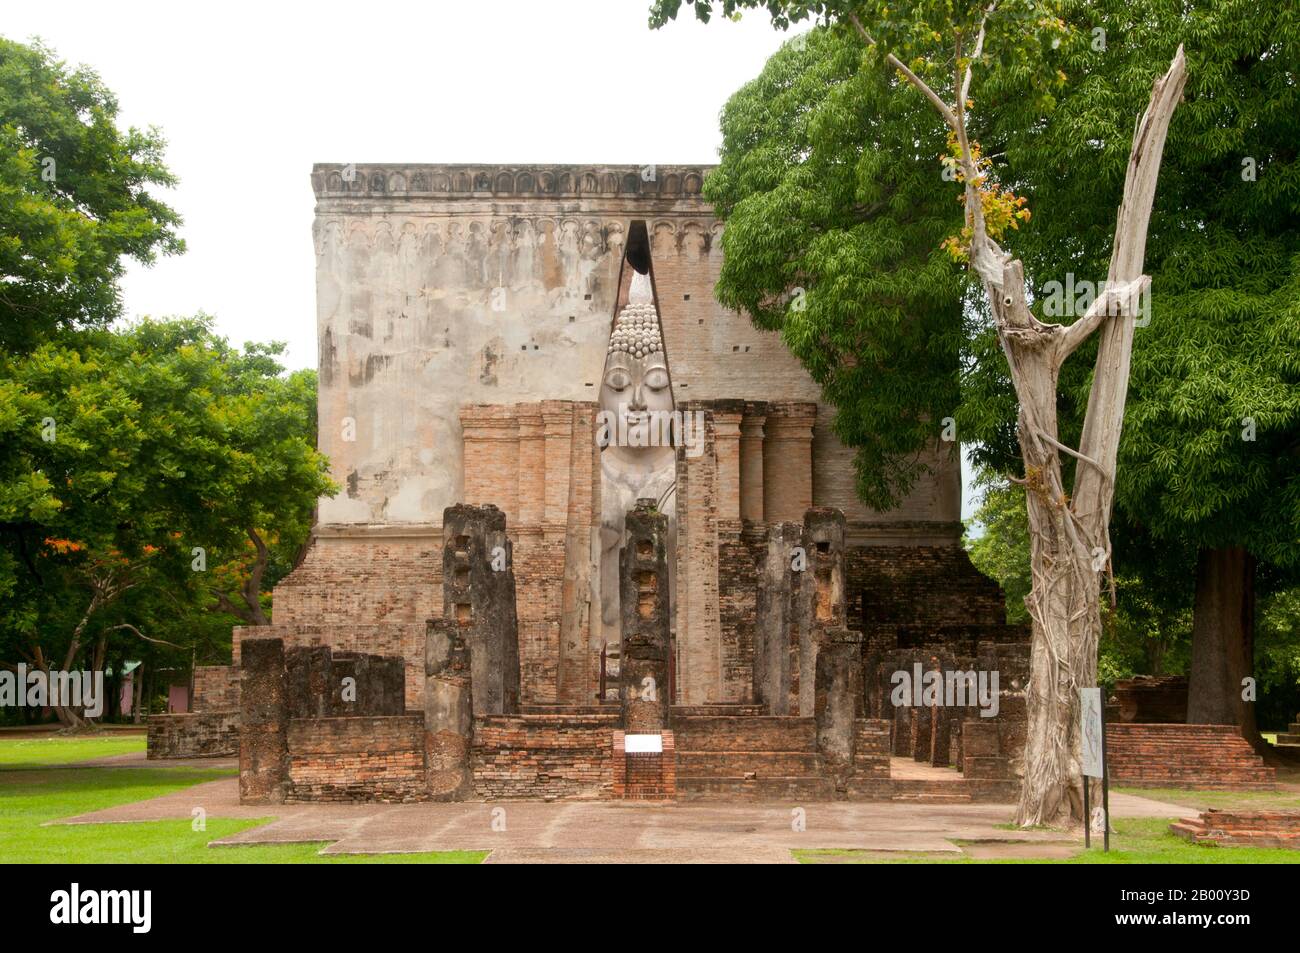 Thailand: 15 Meter hoher sitzender Buddha, Wat Si Chum, Sukhothai Historischer Park. Der Phra Atchana Buddha im Wat Si Chum befindet sich in der Haltung von 'Mara zu unterwerfen' oder 'die Erde zu Zeugen rufen'. Sukhothai, was wörtlich "Dawn of Happiness" bedeutet, war die Hauptstadt des Sukhothai-Königreichs und wurde 1238 gegründet. Es war die Hauptstadt des thailändischen Reiches für etwa 140 Jahre. Stockfoto